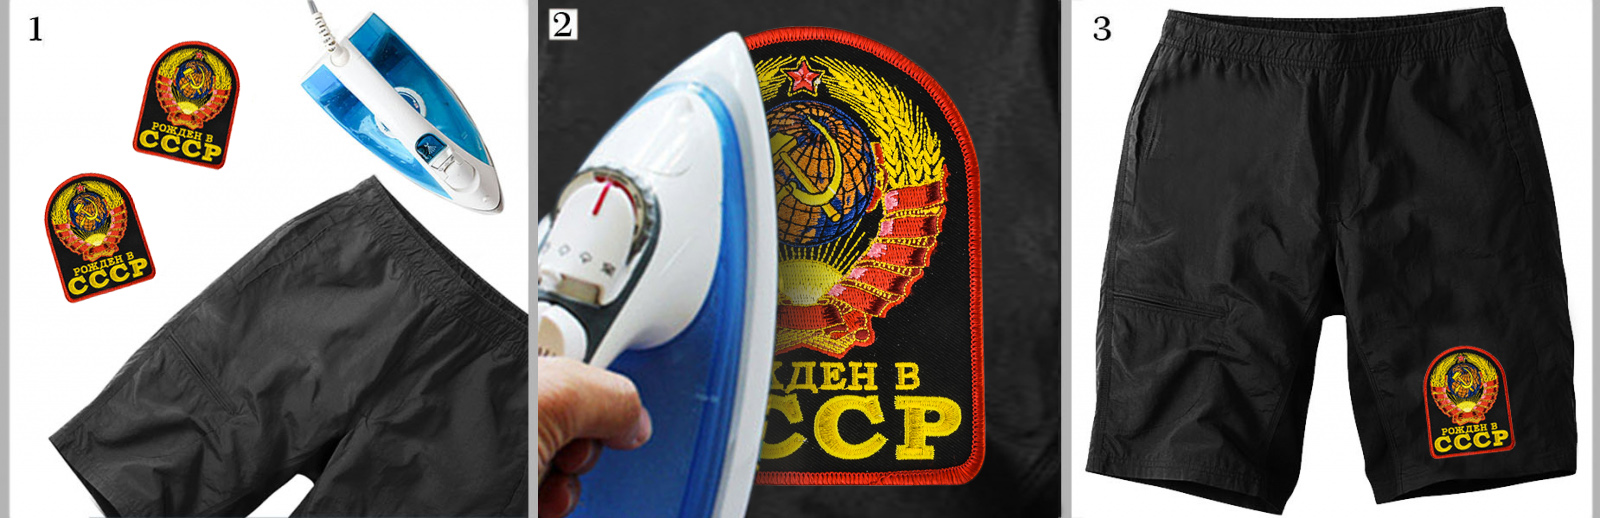 Купить термонашивку с советским гербом по цене производителя